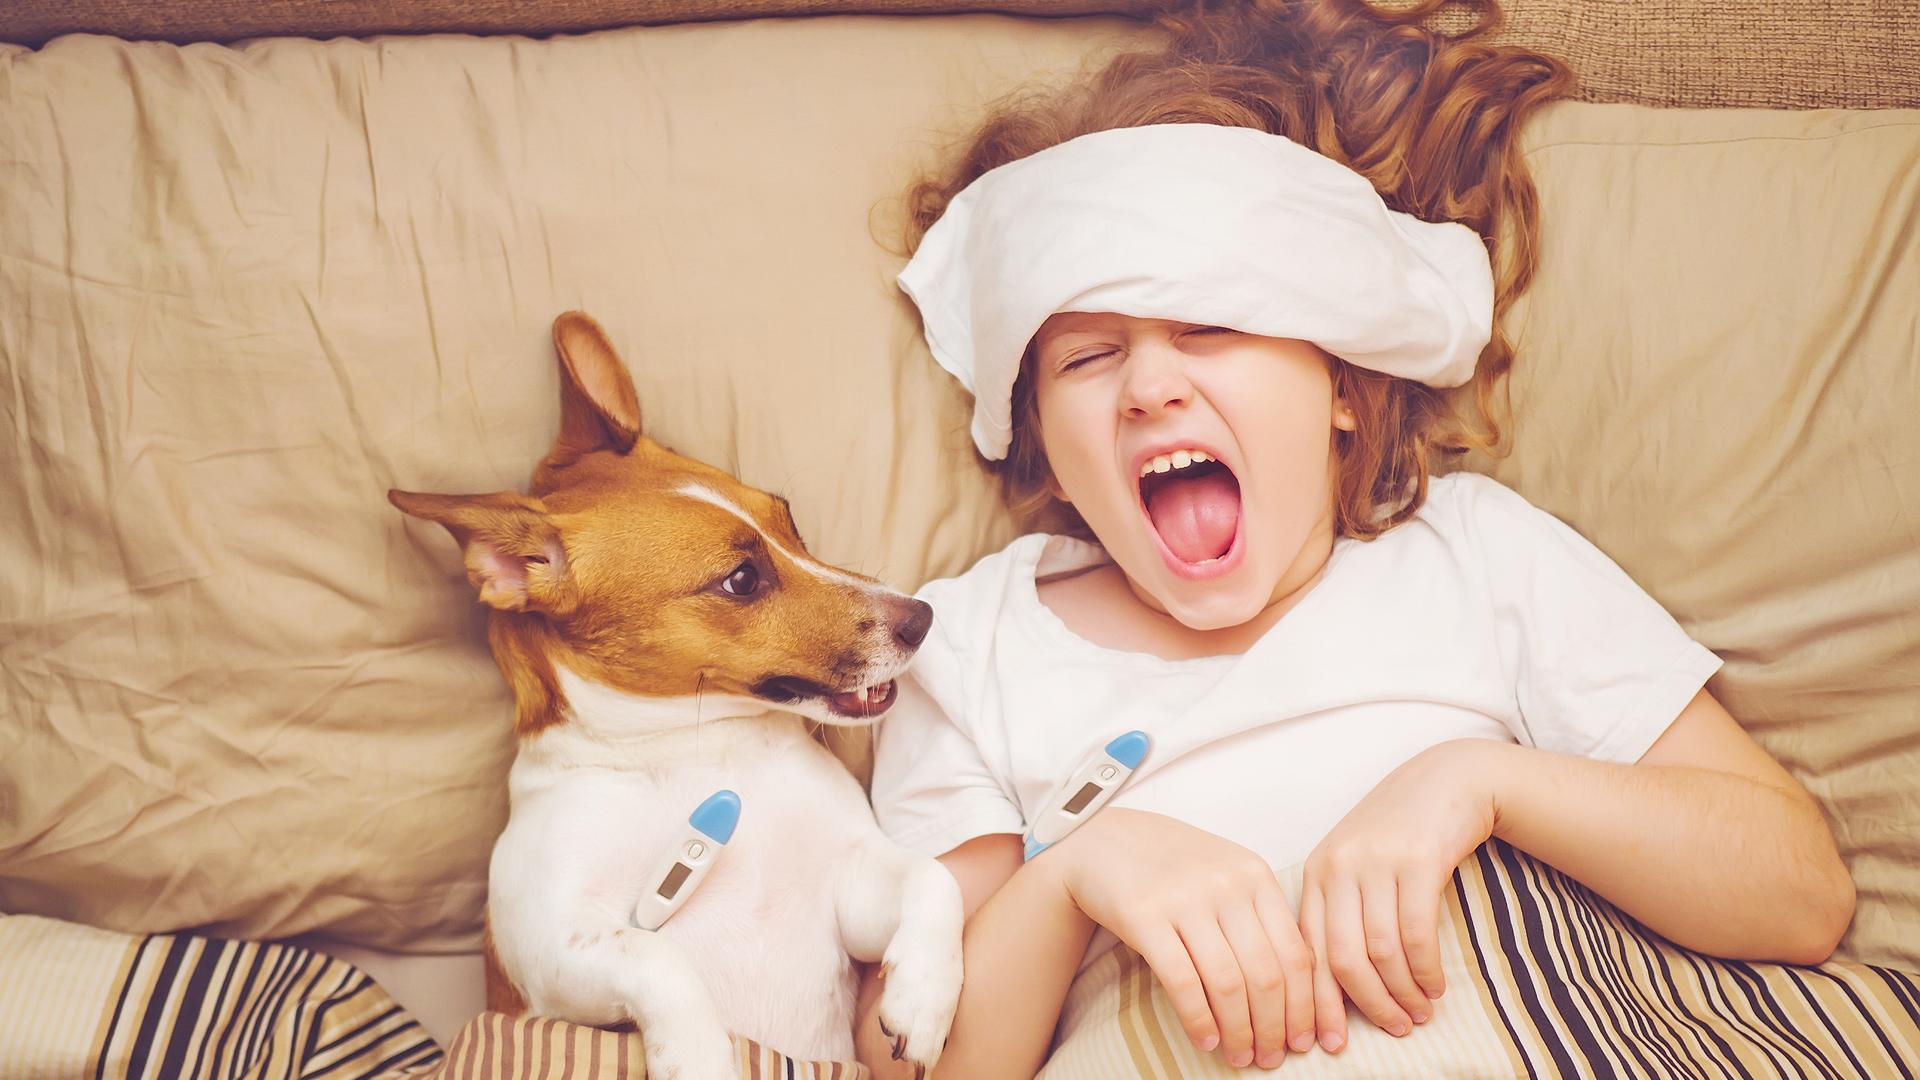 Ein Kind mit Kühlwickel auf der Stirn liegt unter einer Bettdecke und schreit mit weit aufgerissenem Mund. Danaben liegt ein kleiner Hund. Beide haben ein blauweißes Fieberthermometer unter den Arm bzw. Vorderlauf geklemmt.